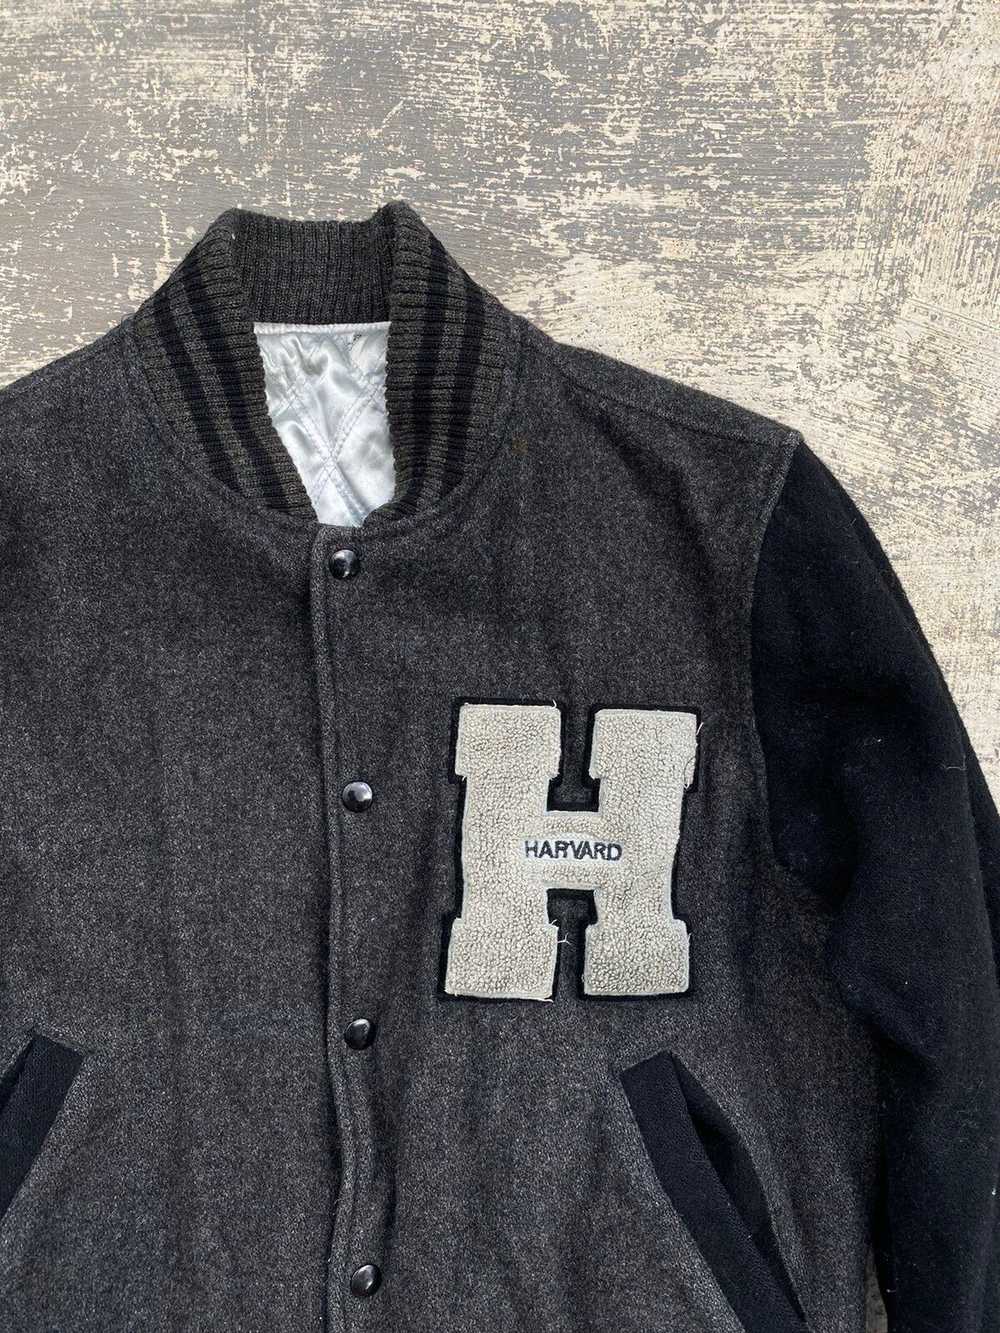 Harvard × Varsity Jacket × Vintage VINTAGE HARVAR… - image 5